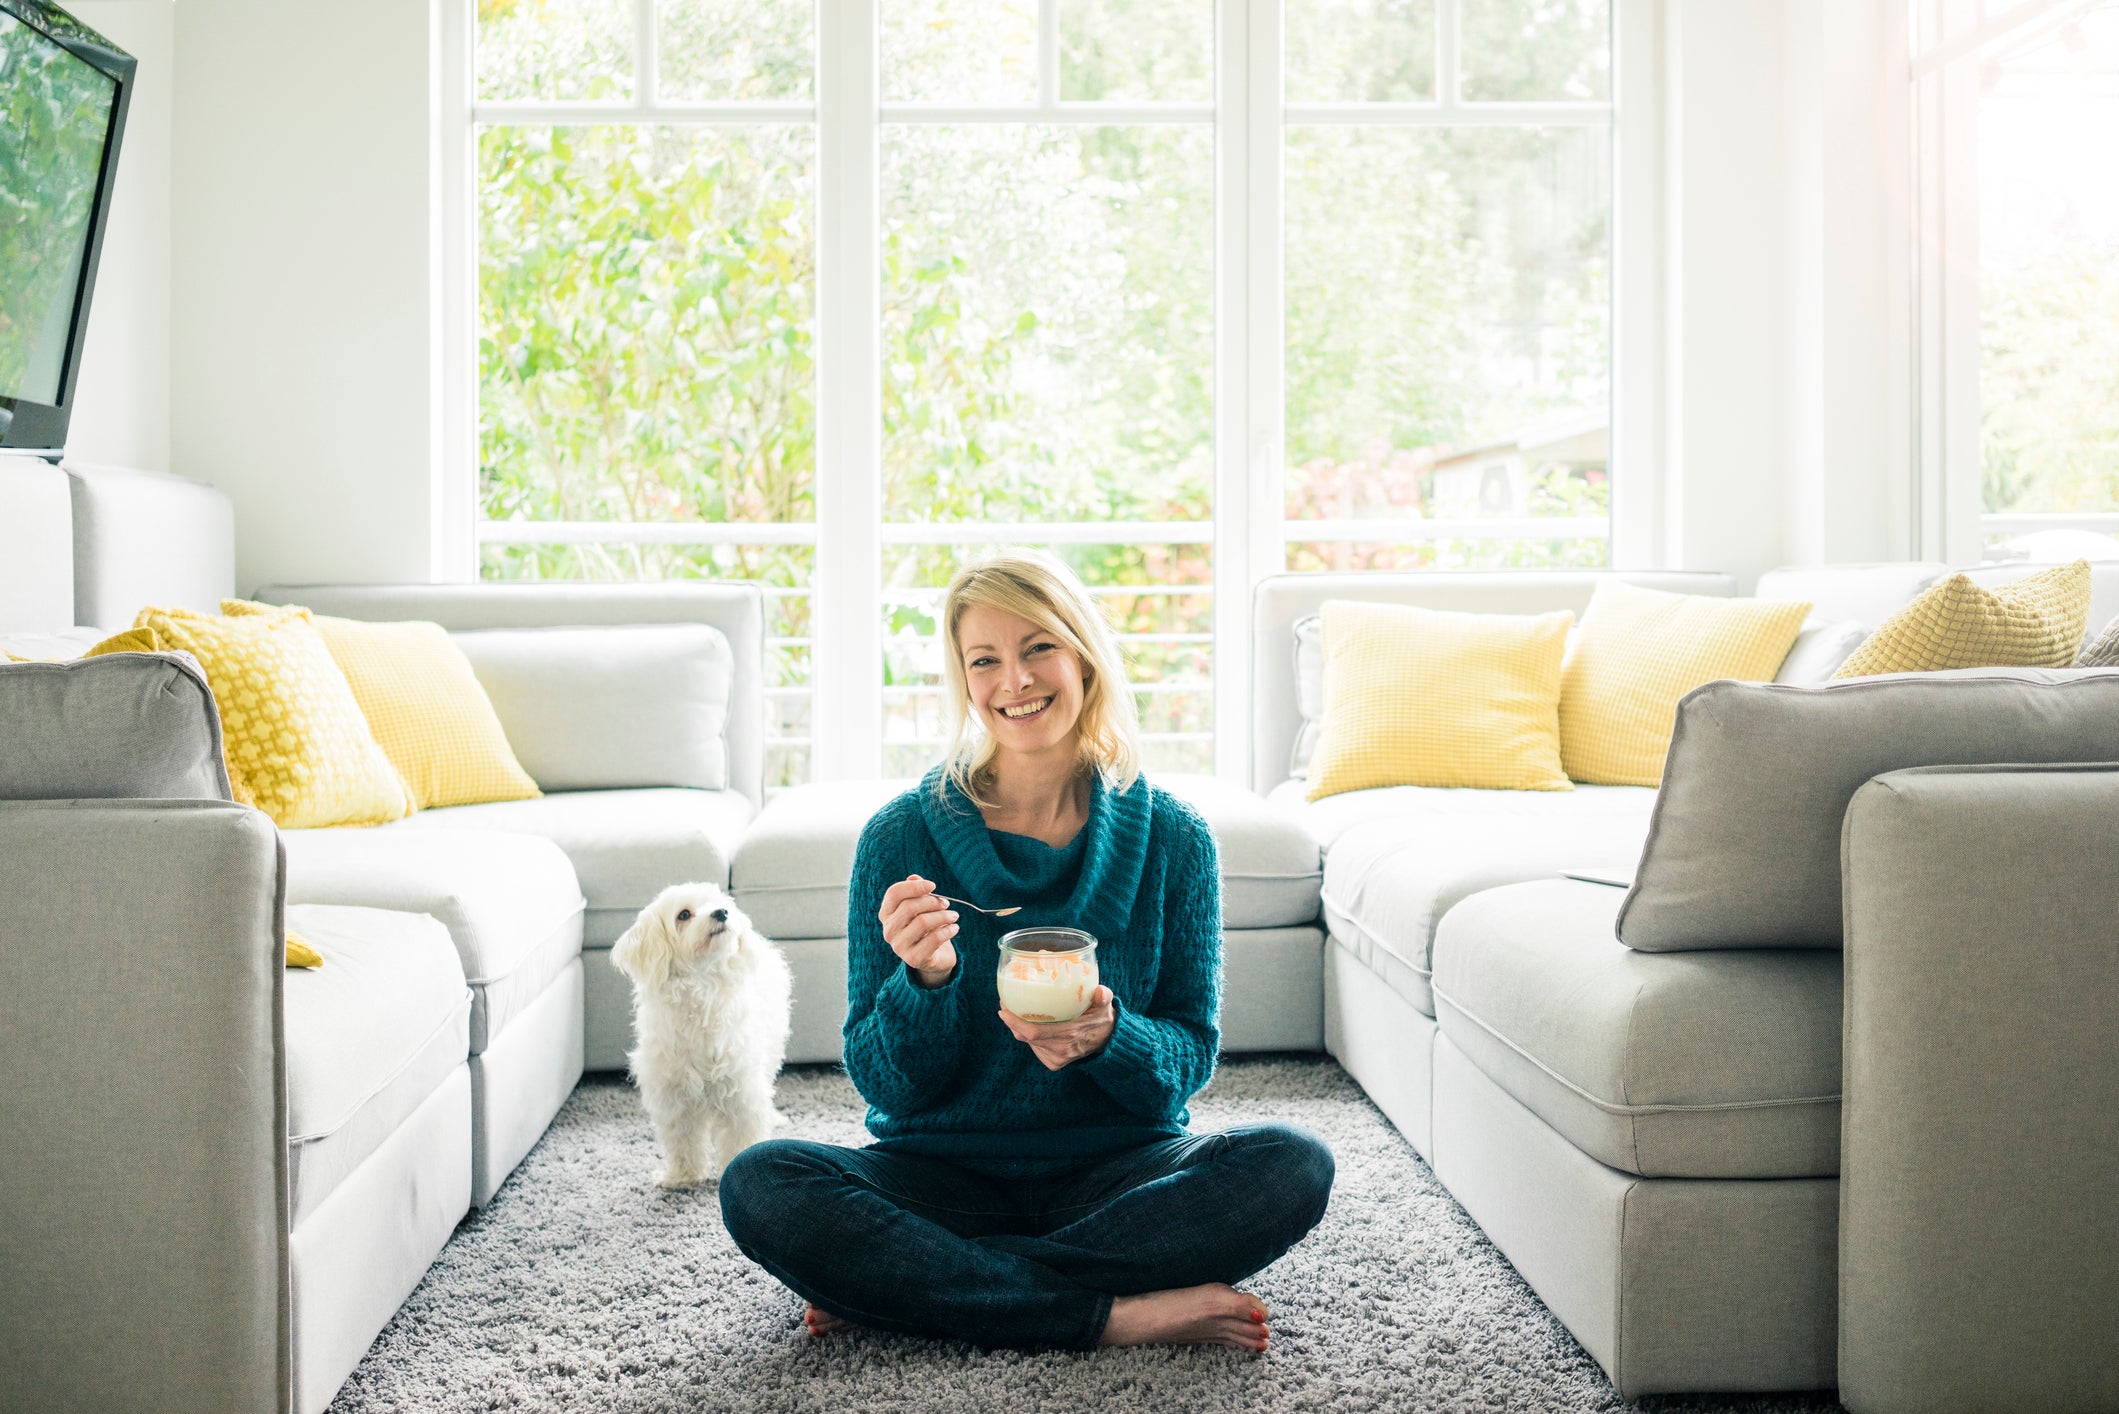 Mulher comendo iogurte em sala de estar enquanto cãozinho branco olha para ela